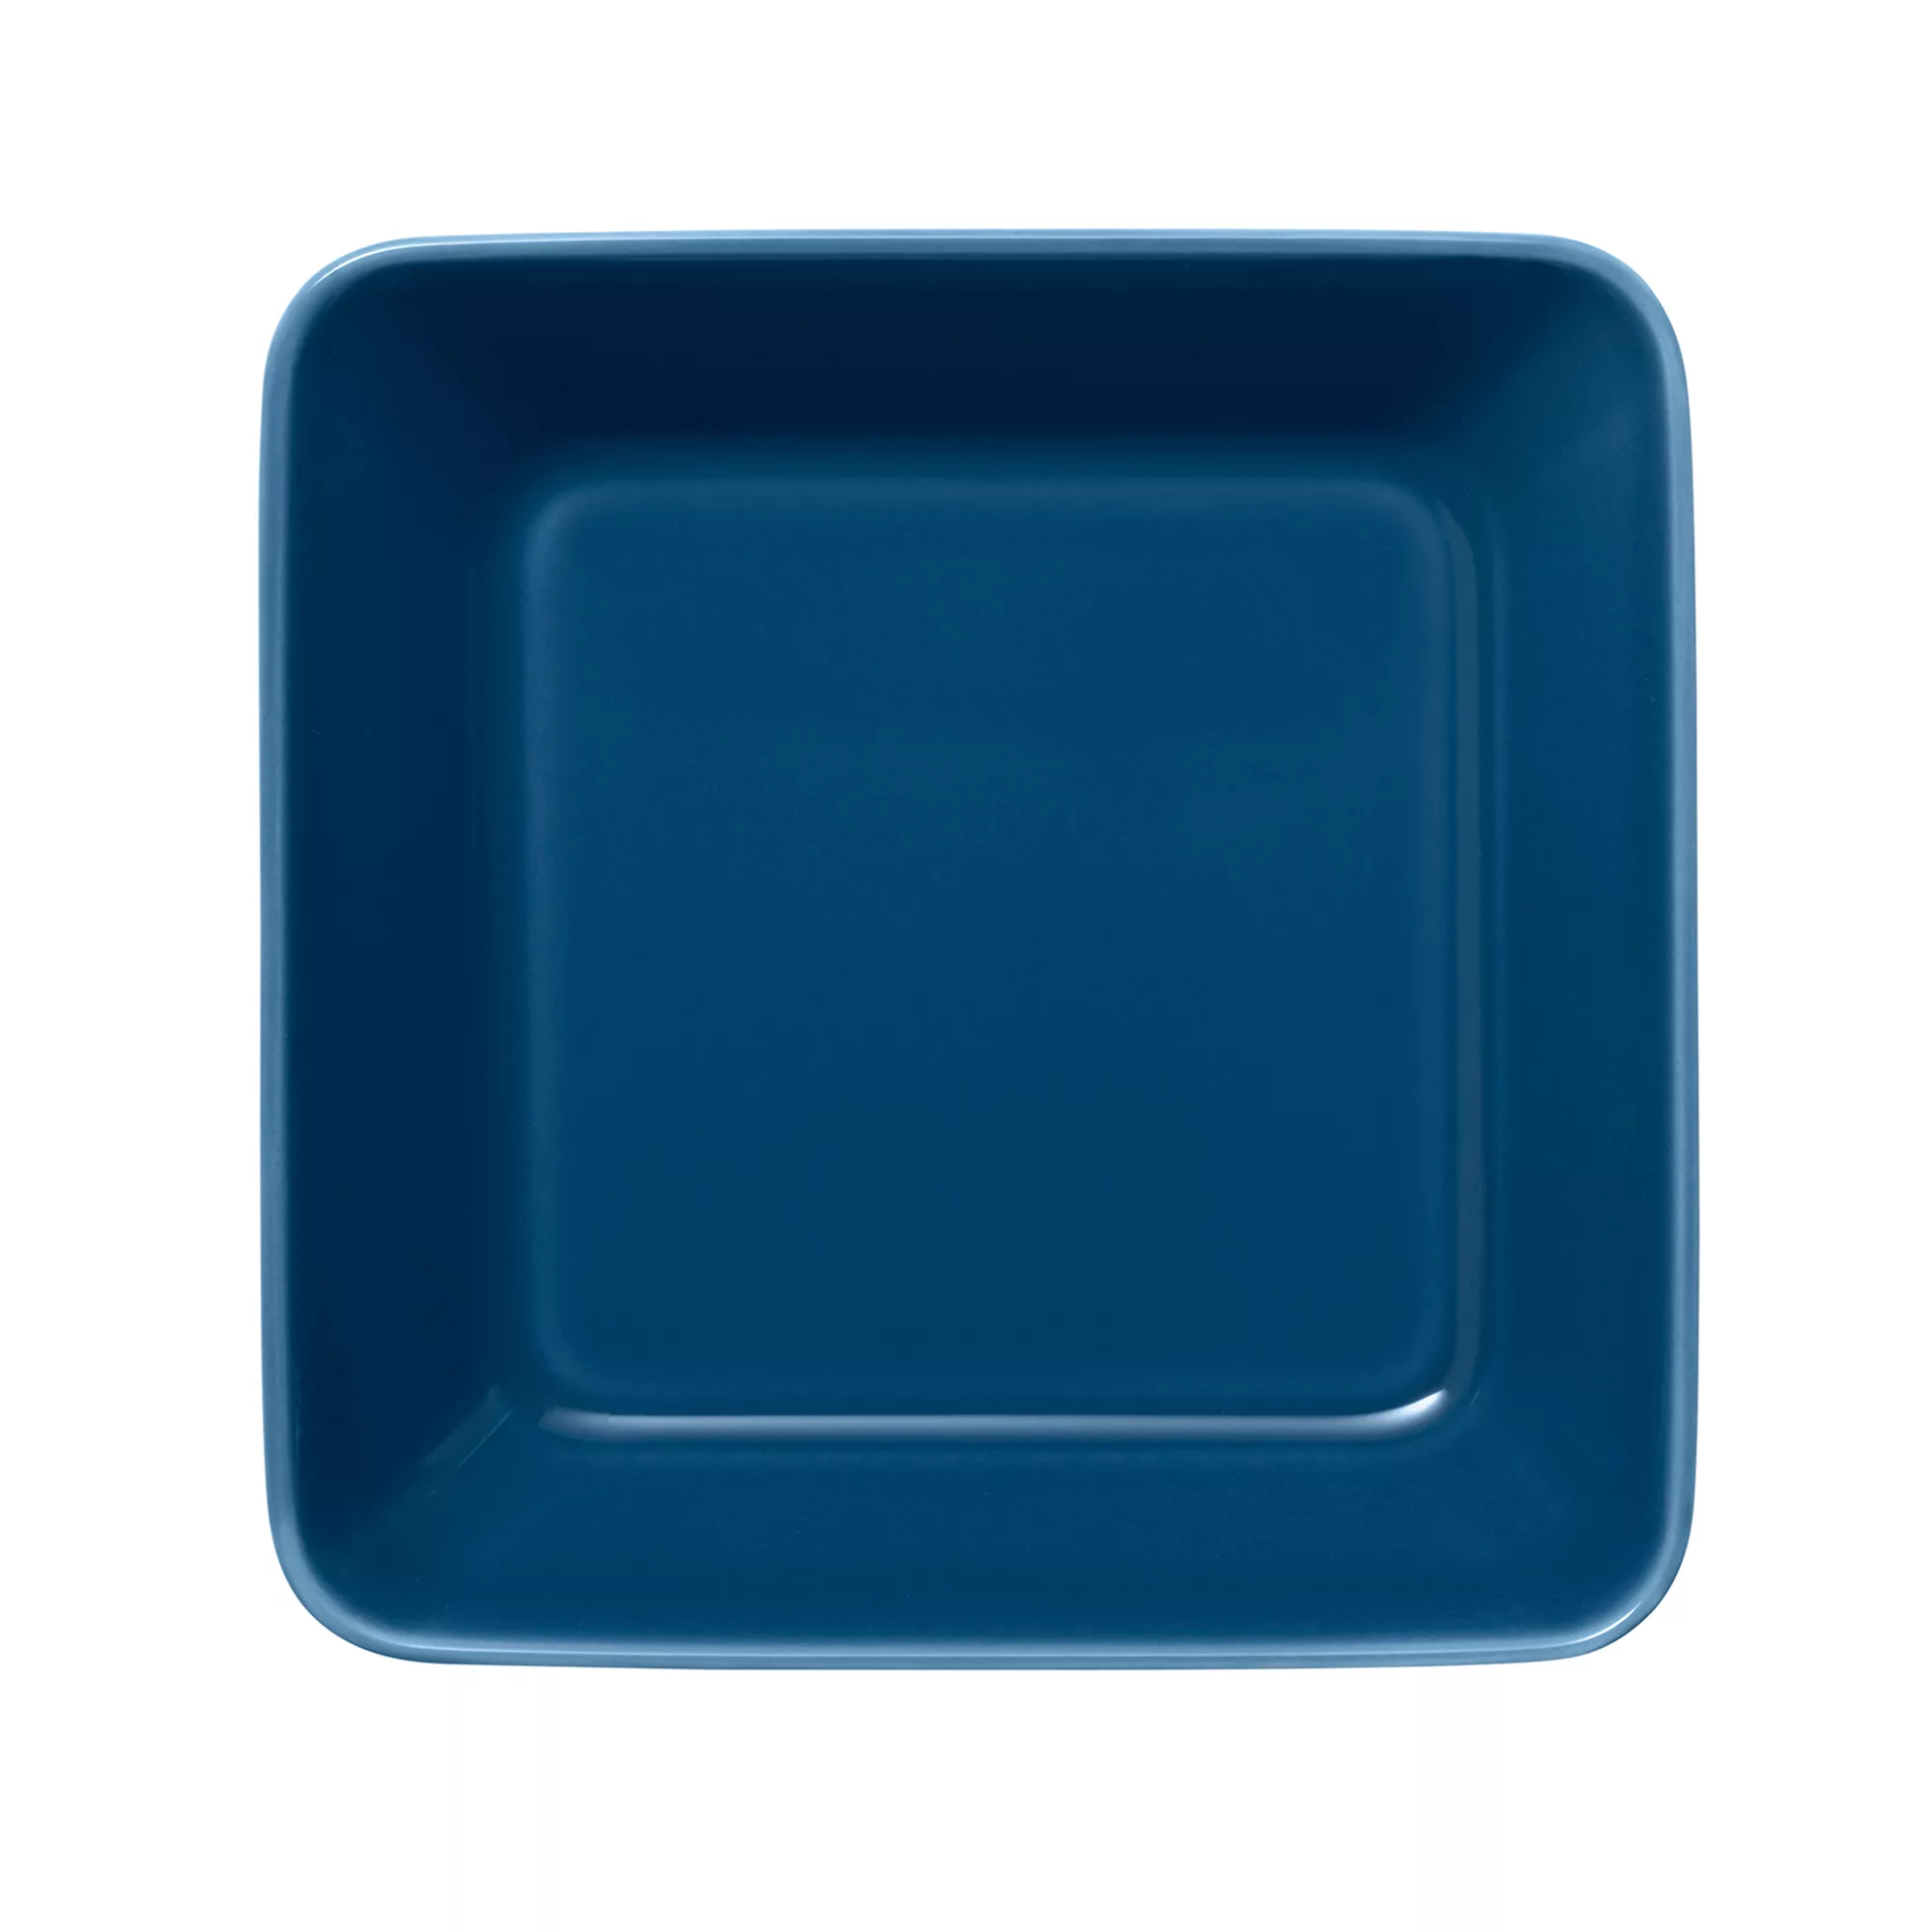 iittala - Teema Teller 16x16cm - vintage blau/LxBxH 16x16x4,4cm günstig online kaufen